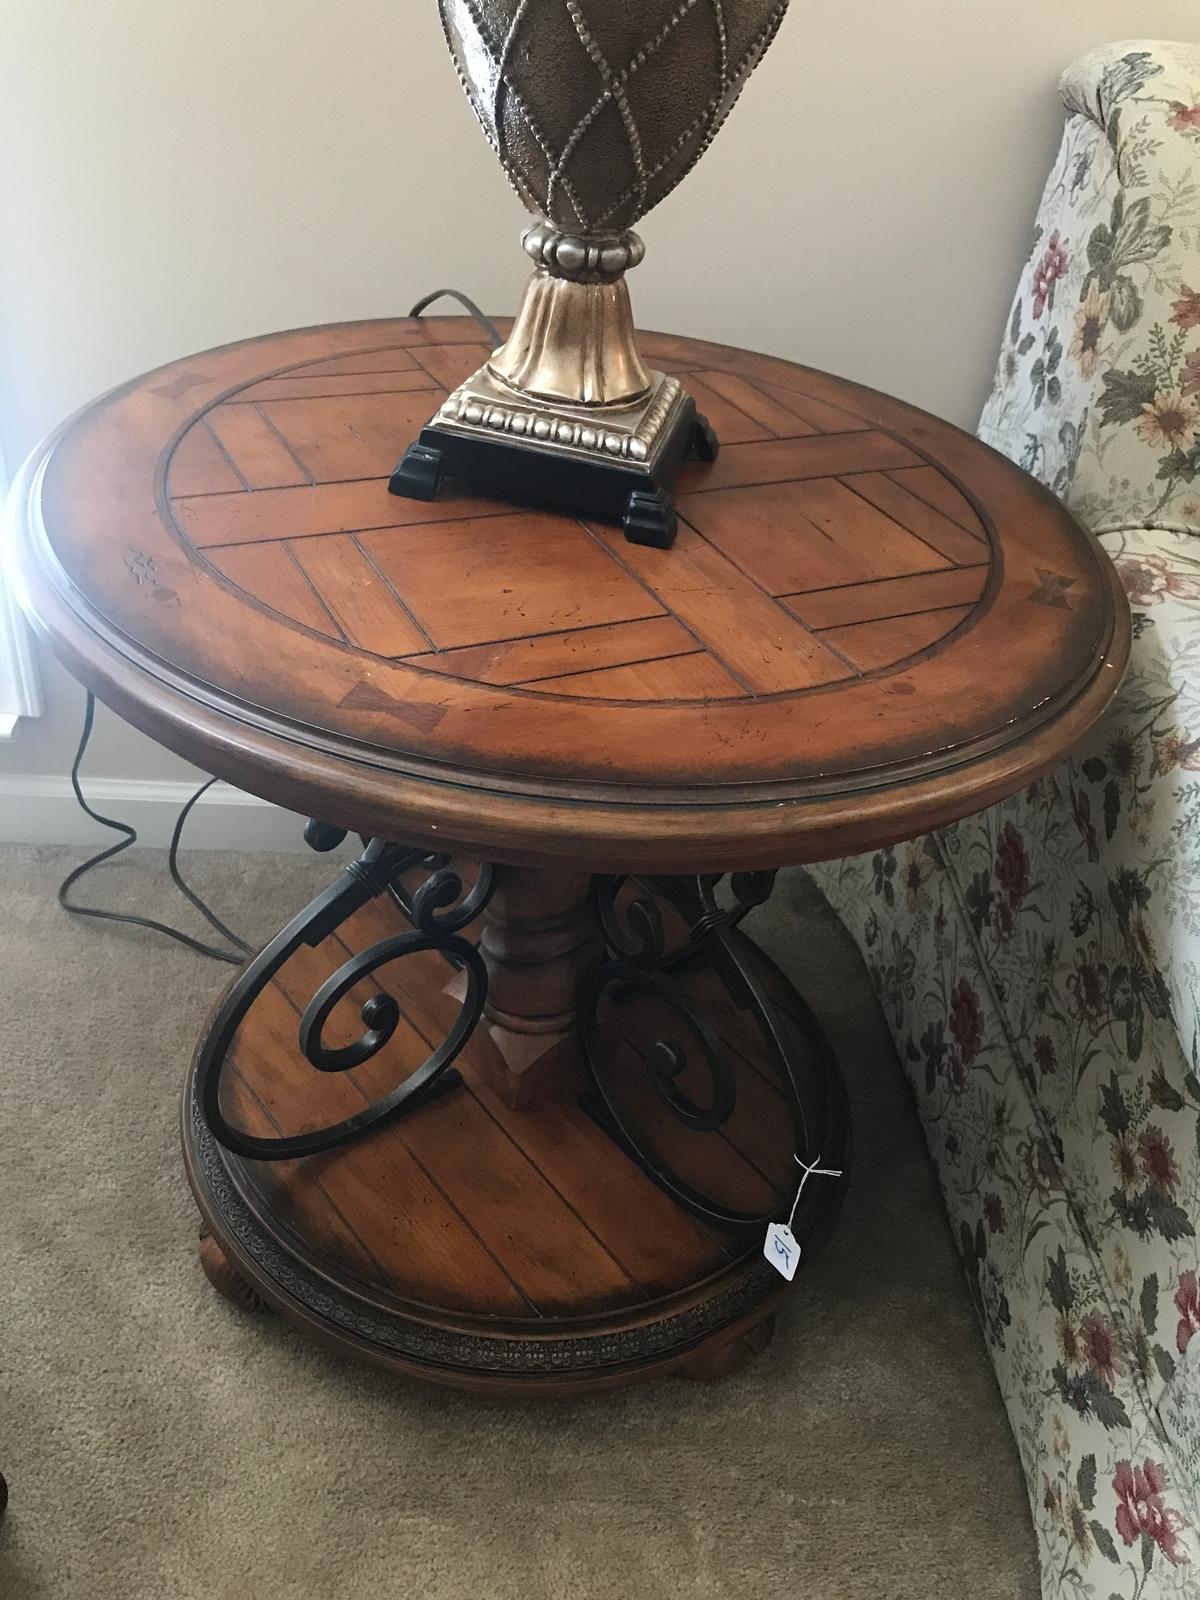 Decorative, Wood and Metal Lamp Table, 26" Diameter.